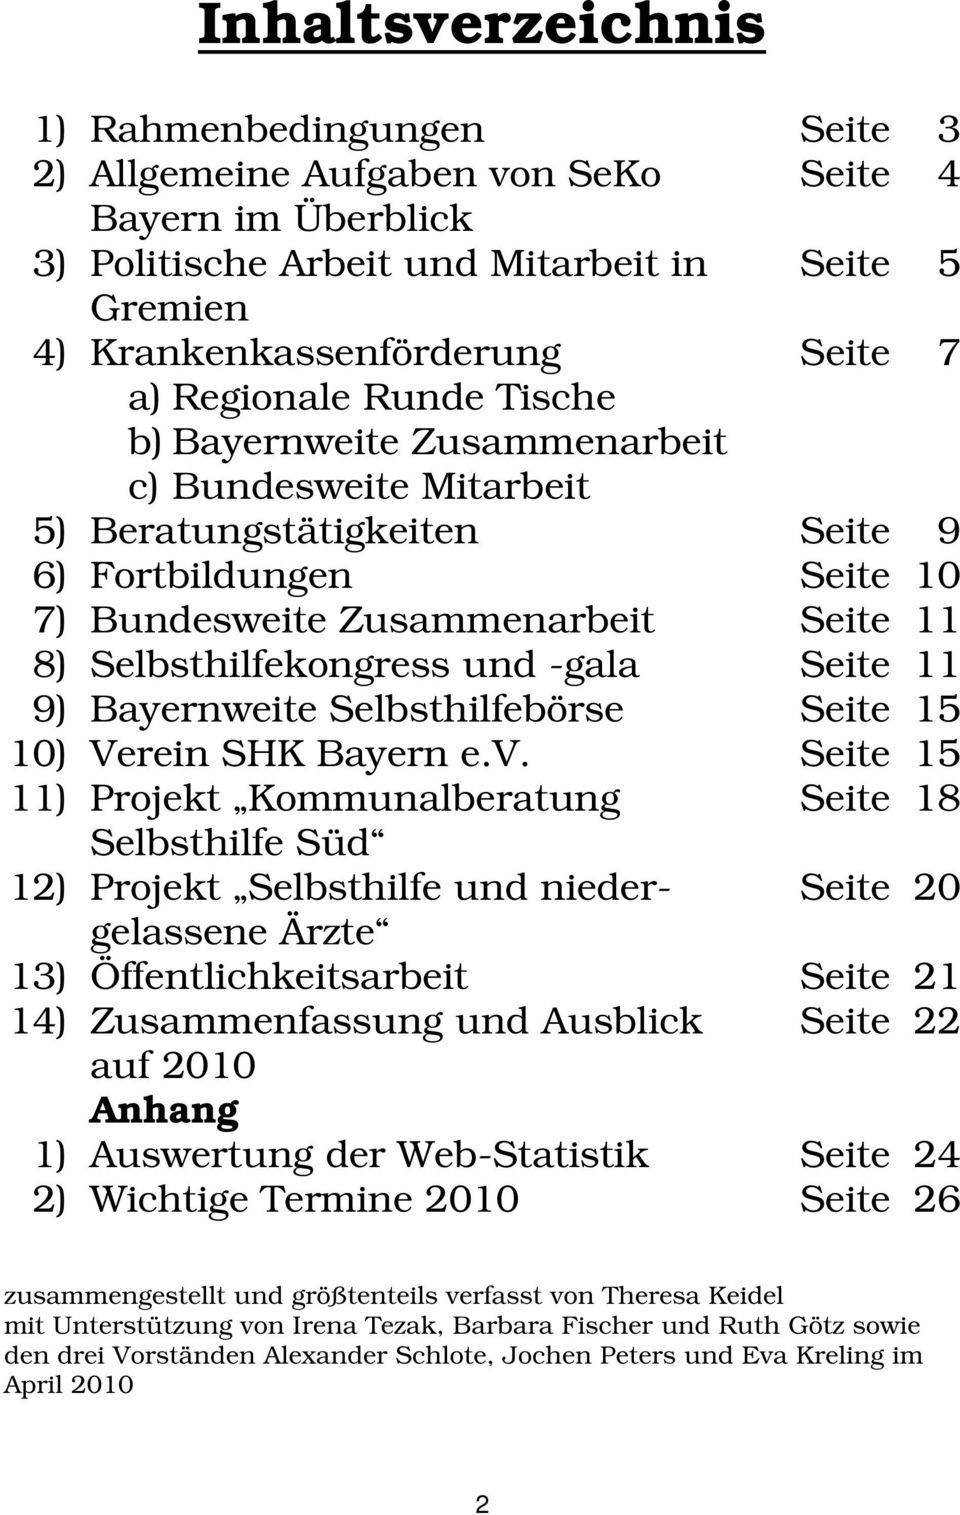 und -gala Seite 11 9) Bayernweite Selbsthilfebörse Seite 15 10) Verein SHK Bayern e.v.